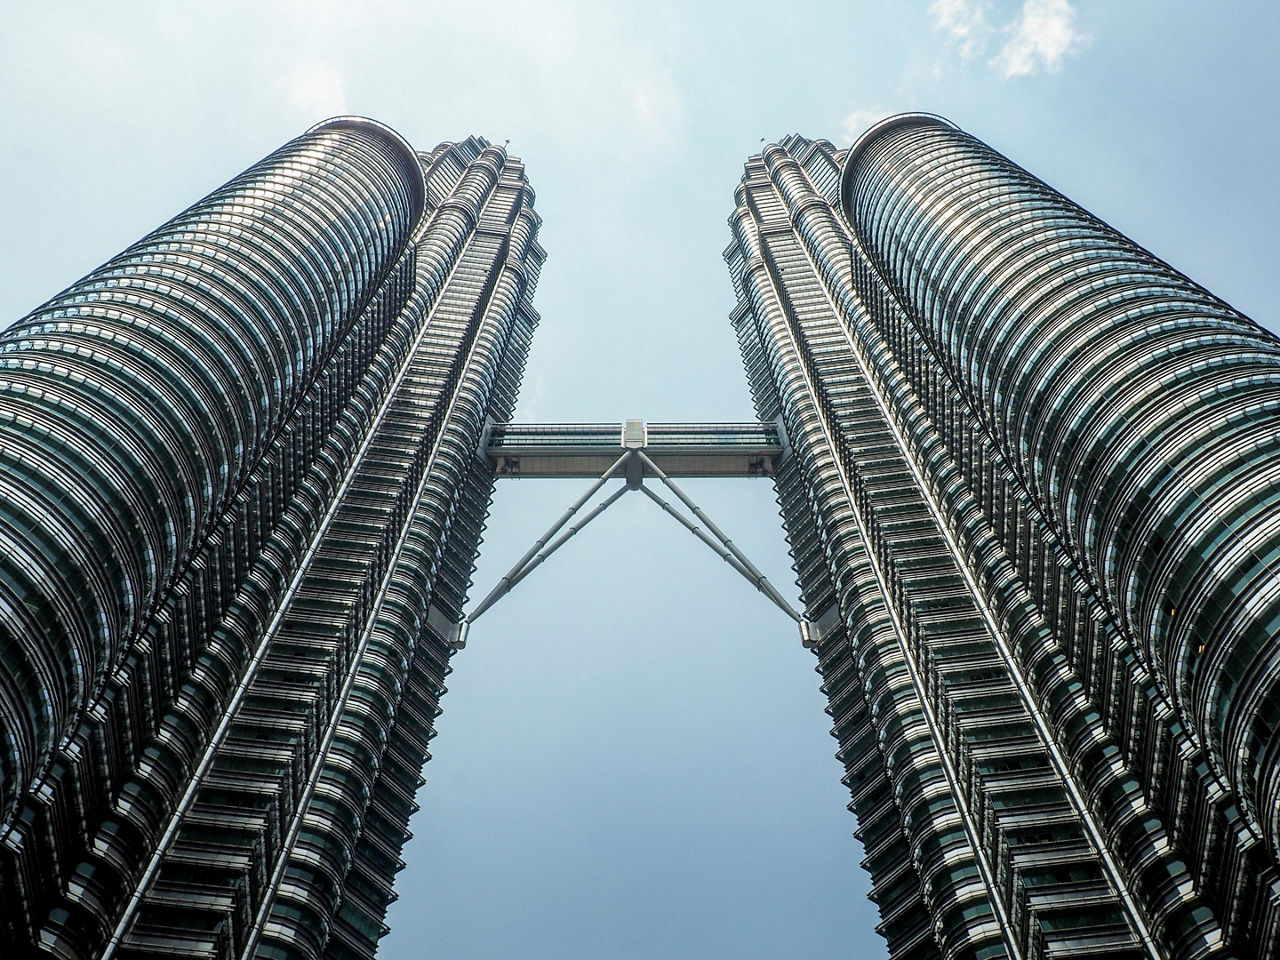 The very tall and modern twin towers in Kuala Lumpur, Malaysia